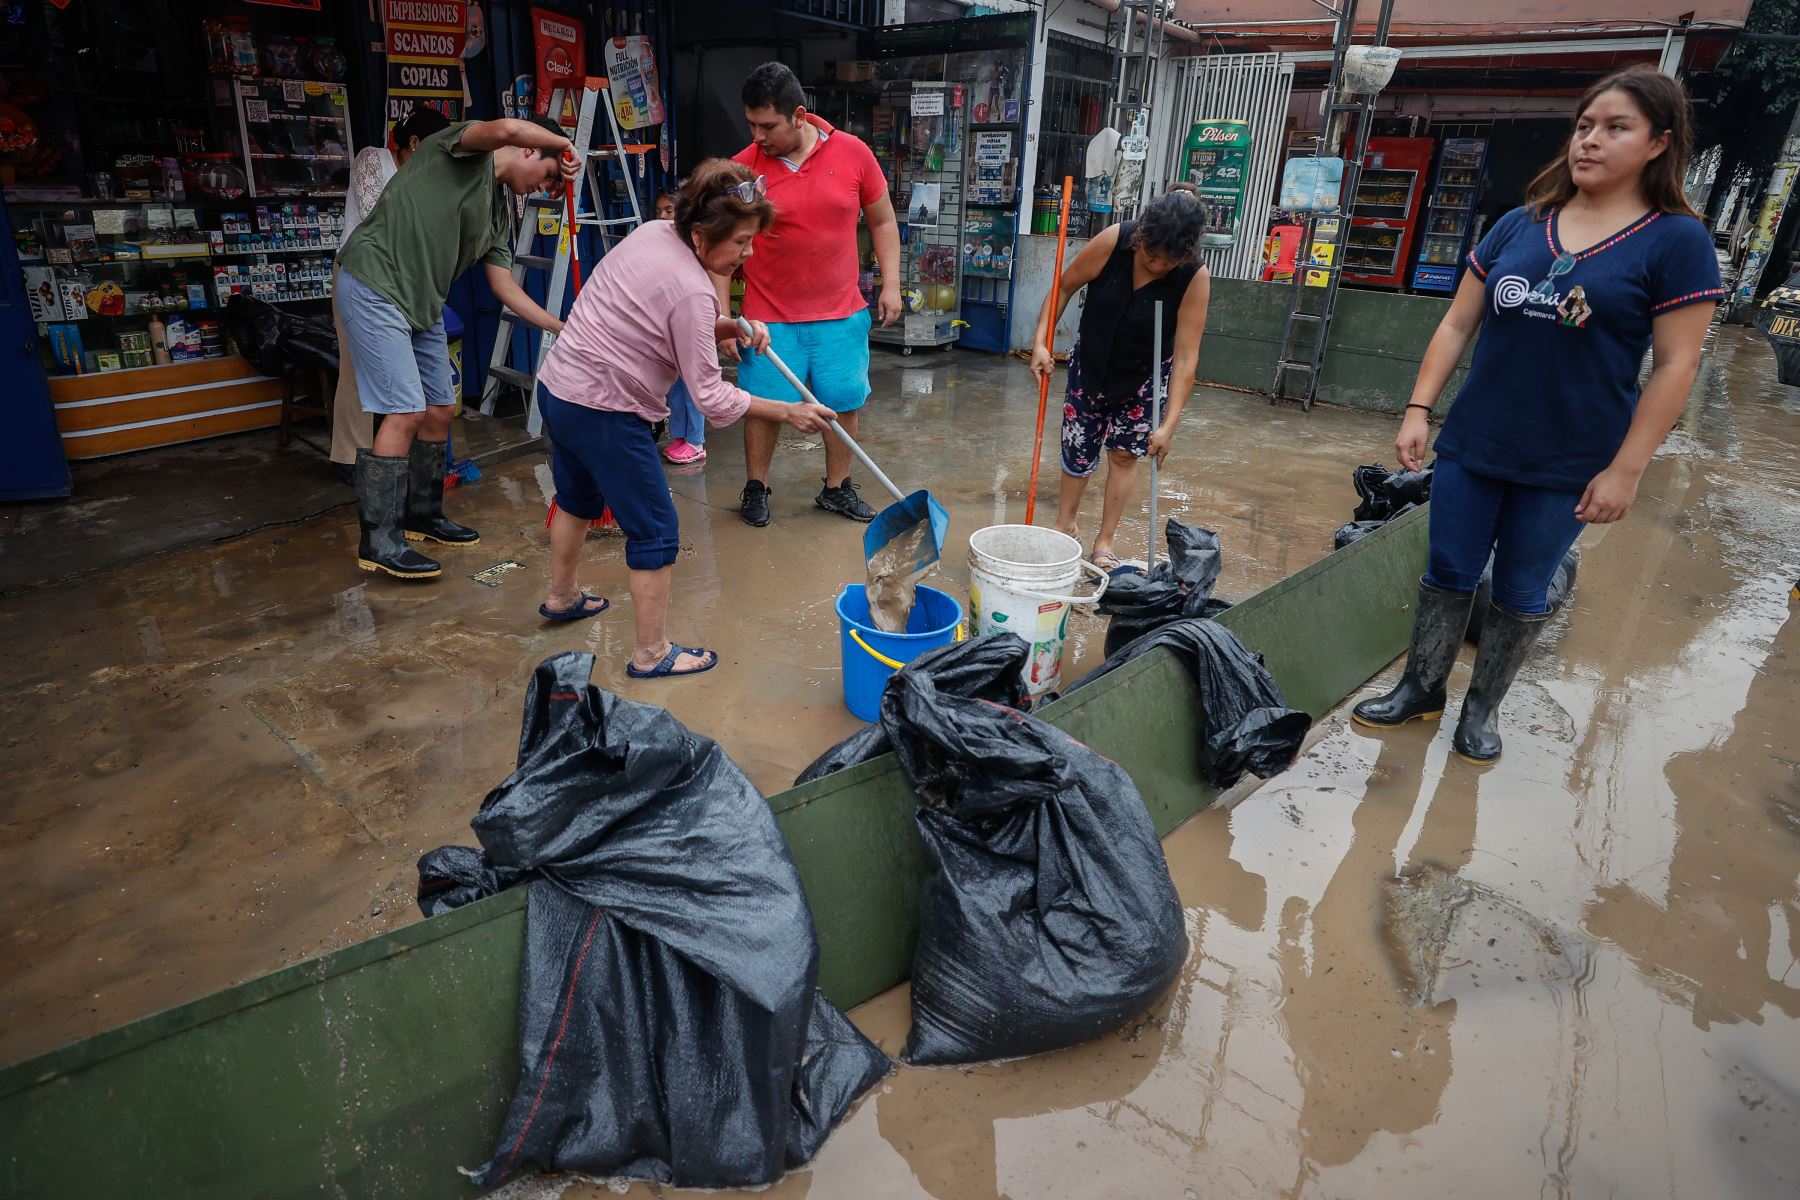 La Carretera Central luce esta tarde completamente inundada en el distrito de Chaclacayo, debido a la activación de la quebrada Los Laureles por las intensas lluvias que se registraron en las últimas horas.

Foto: ANDINA/Vidal Tarquii